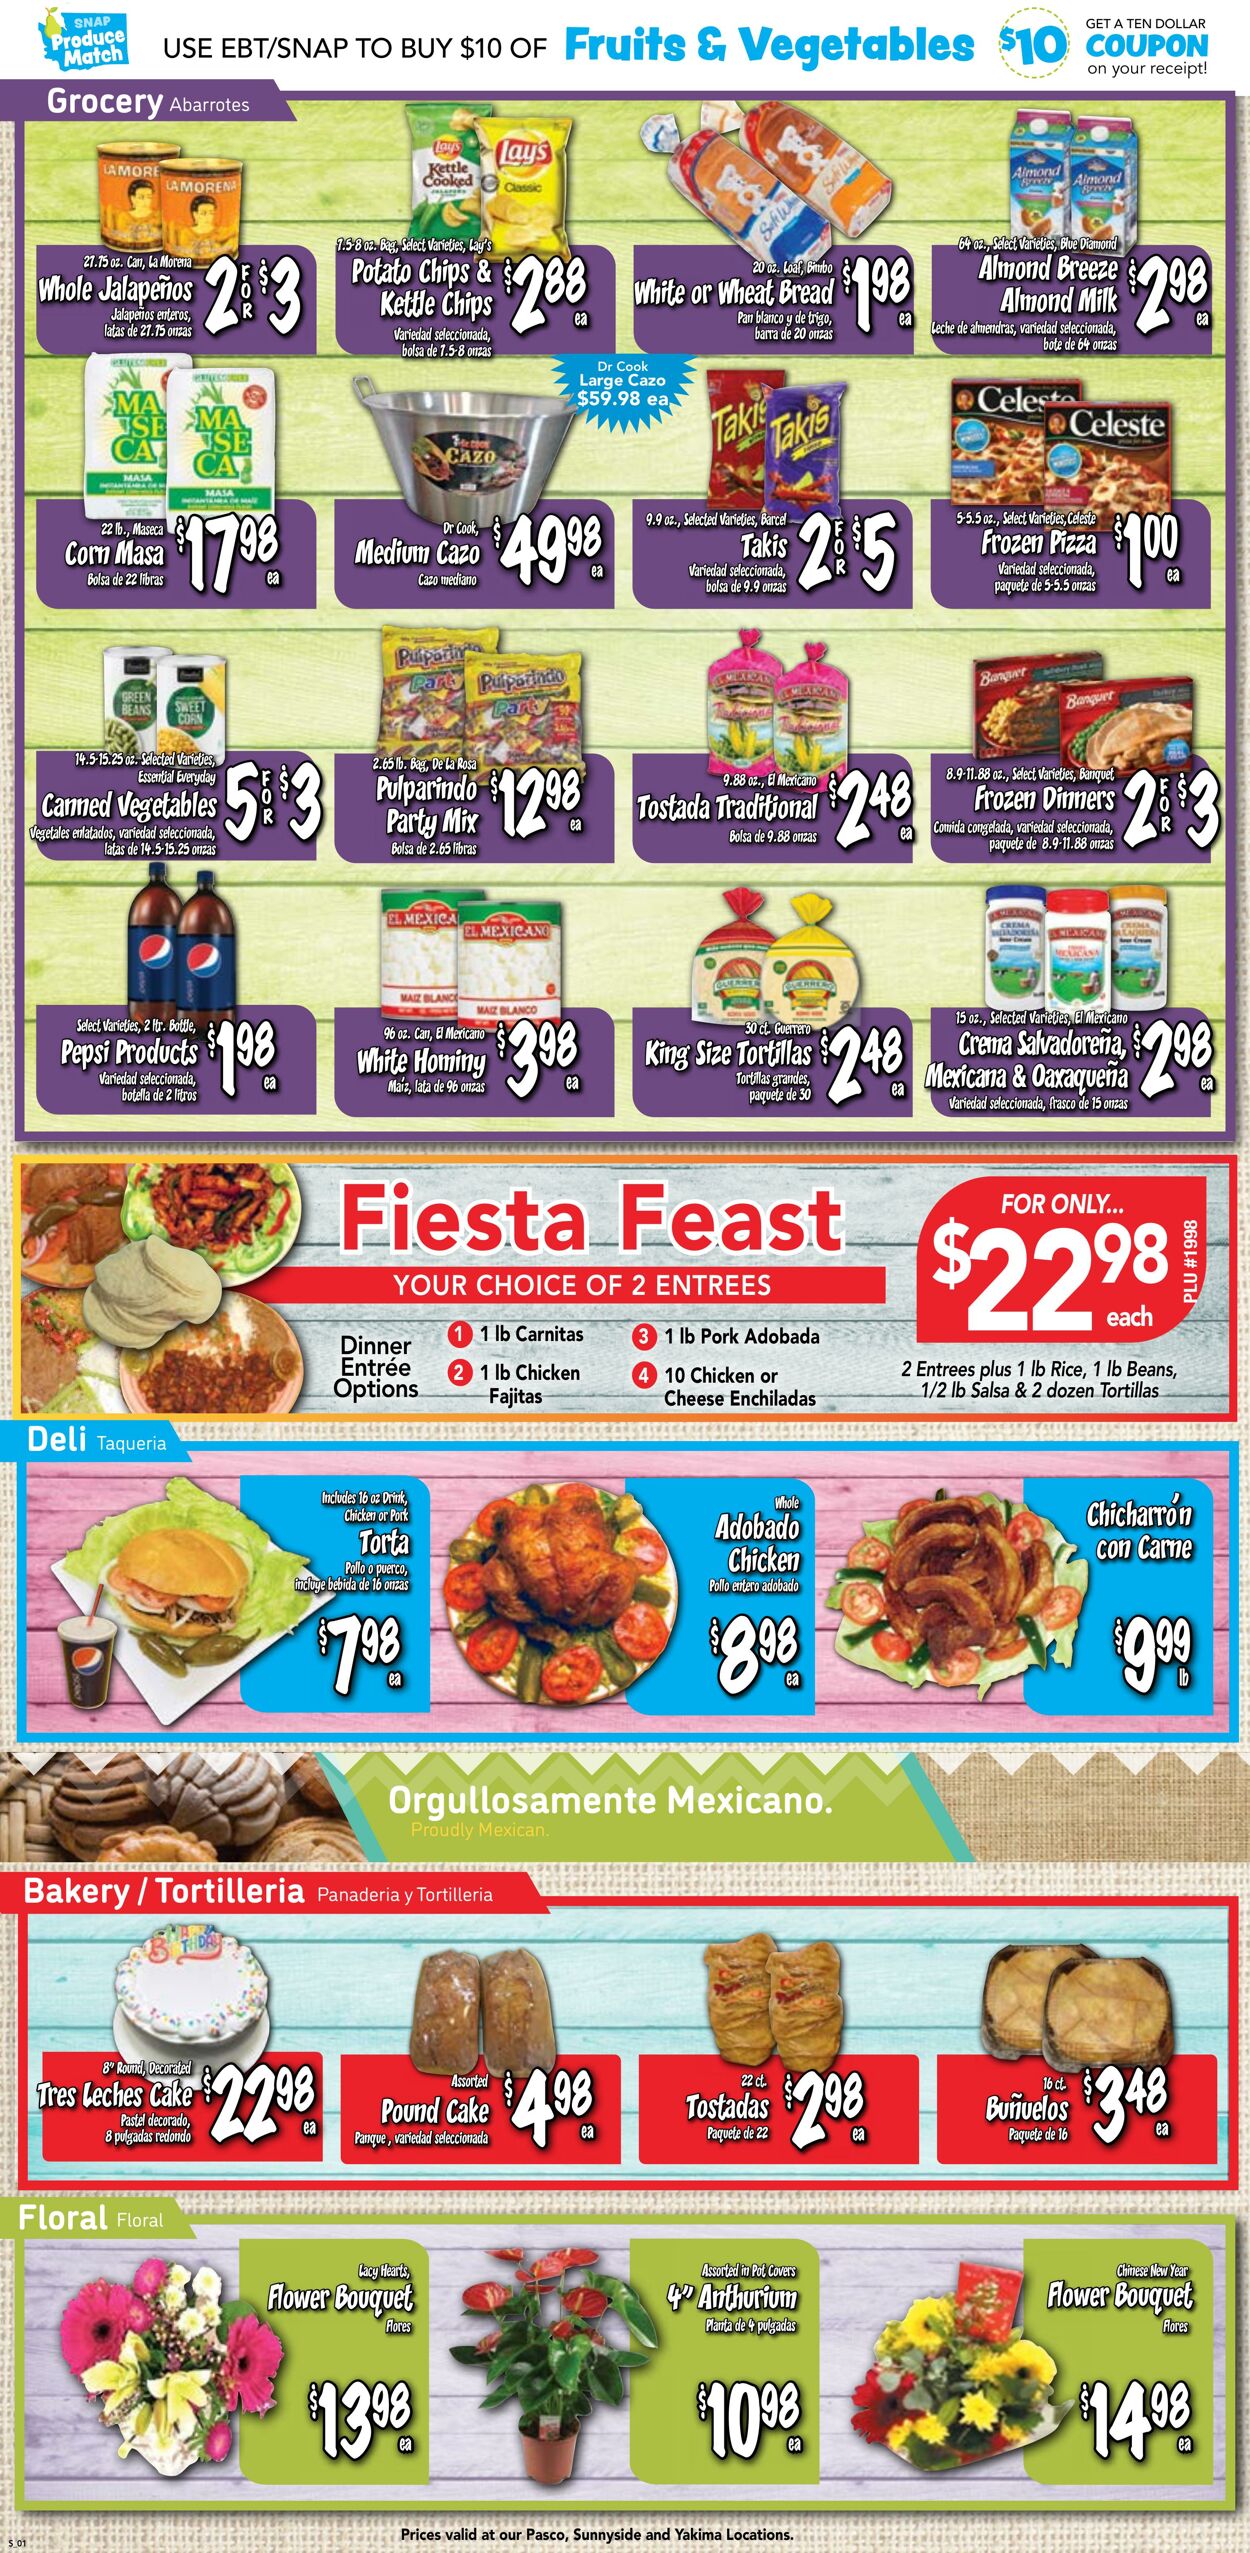 Weekly ad Fiesta Foods 01/31/2024 - 02/06/2024